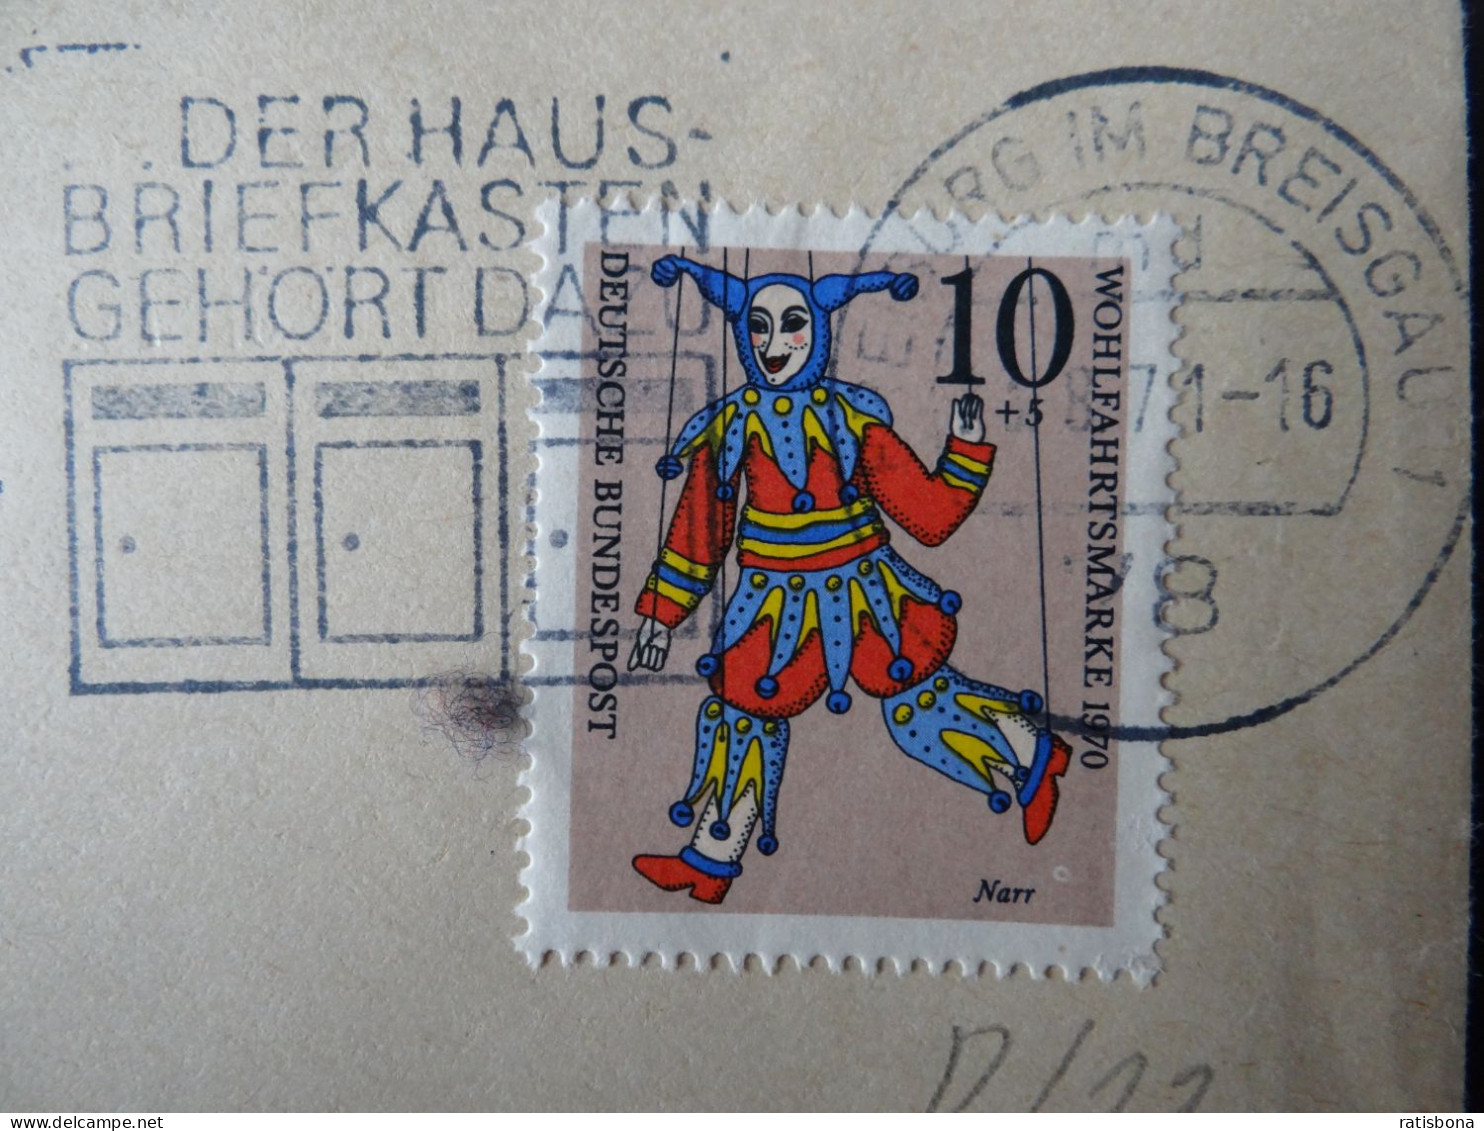 7800 Freiburg I.Breisgau - Der Hausbriefkasten Gehört Dazu - Werbestempel 1971 - Máquinas Franqueo (EMA)